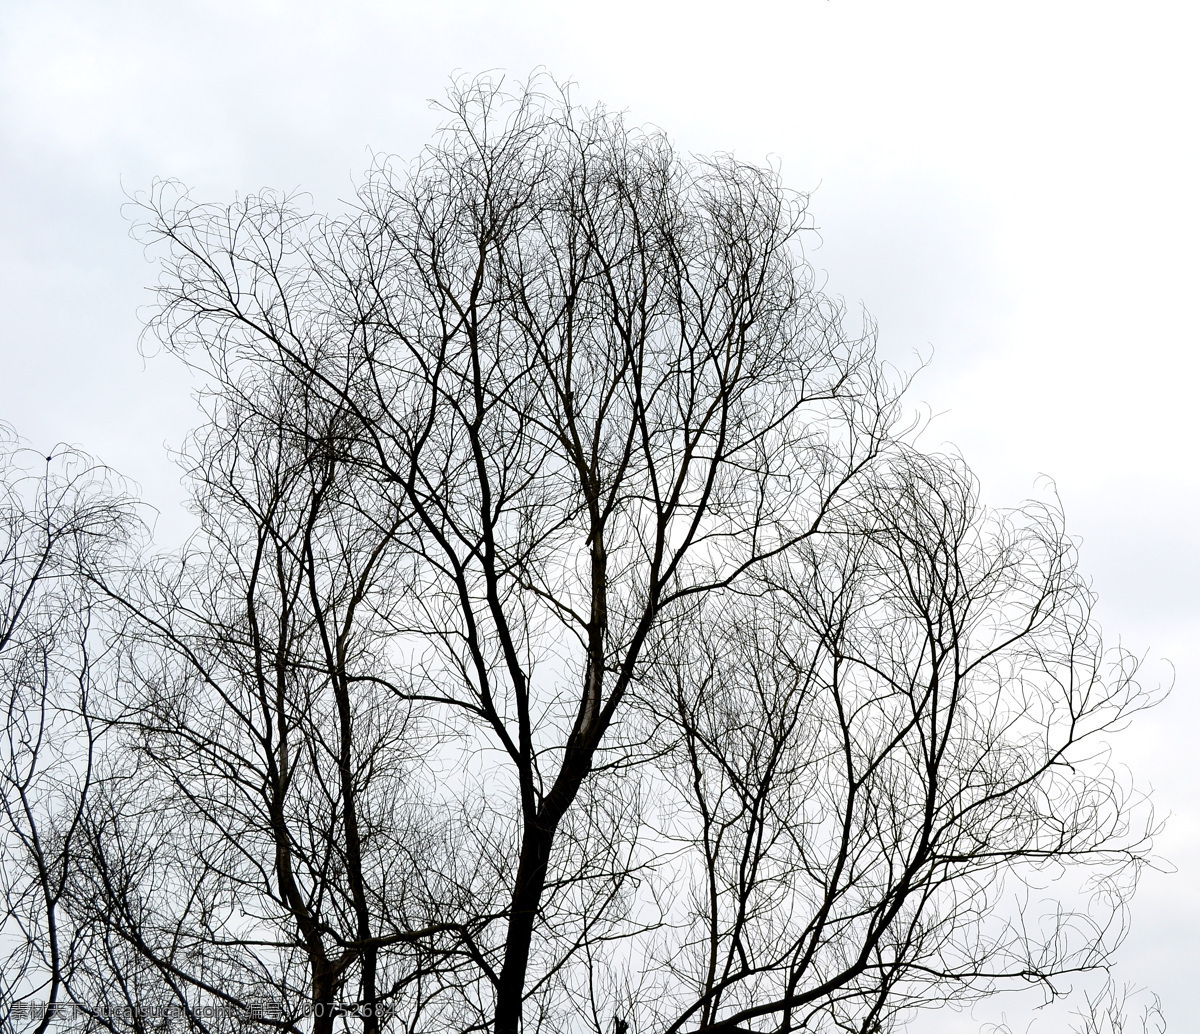 树枝 树木剪影 装饰背景树枝 画意树枝 蓝天和树枝 白云和树枝 干树枝 树枝图片 树枝剪影图片 自然景观 自然风景